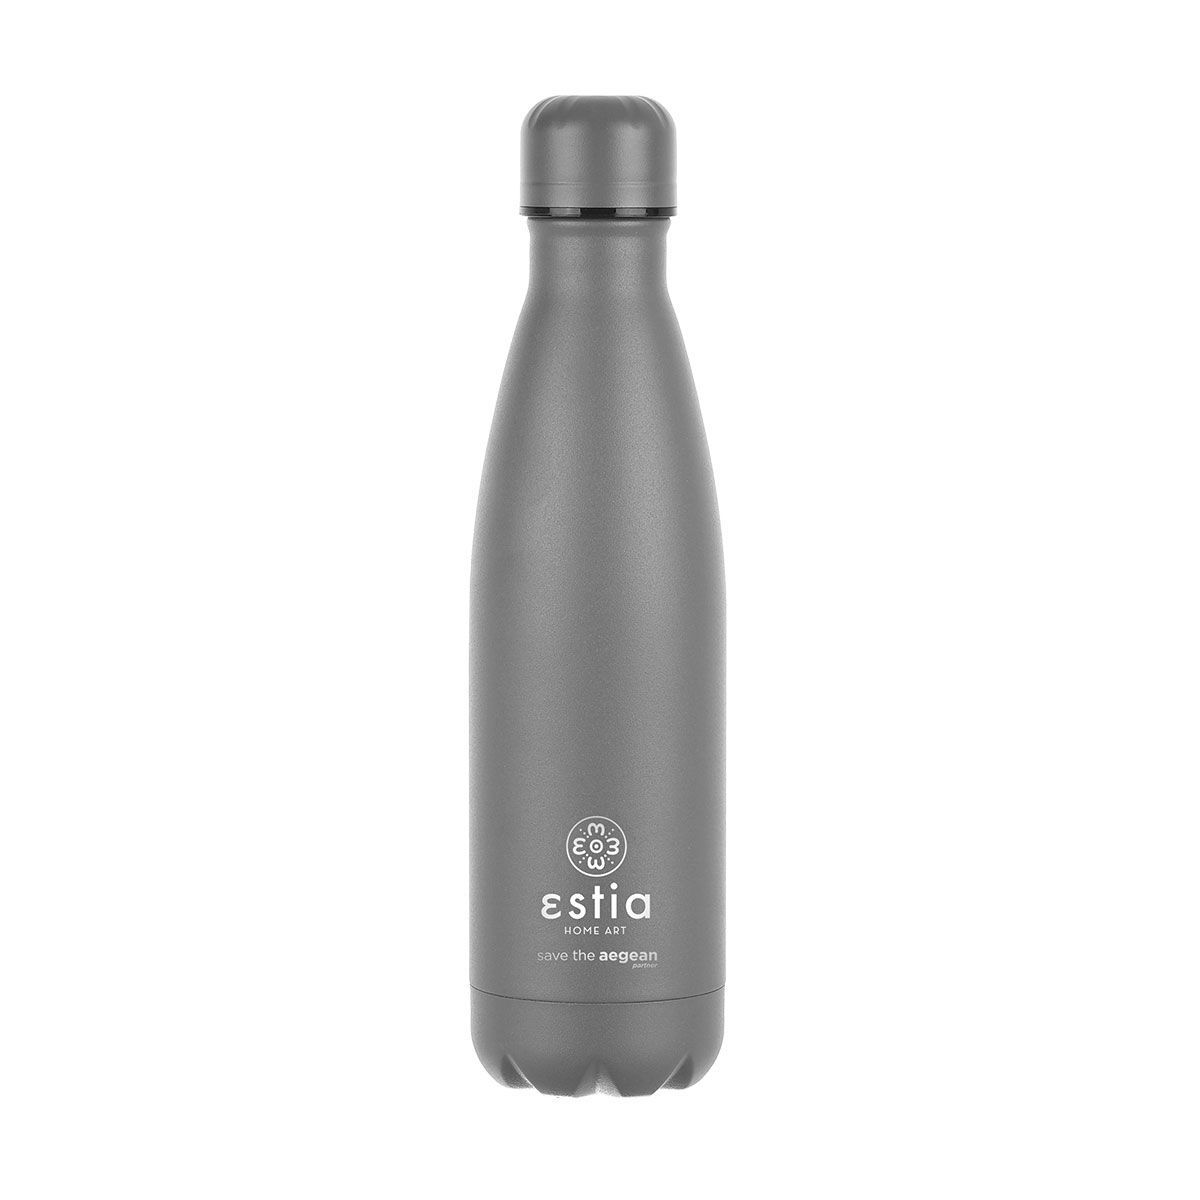 Θερμός-Μπουκάλι Ανοξείδωτο Flask Lite Save The Aegean Fjord Grey Estia 500ml-7x7x26,6εκ. 01-18016 (Υλικό: Ανοξείδωτο, Χρώμα: Γκρι) – estia – 01-18016